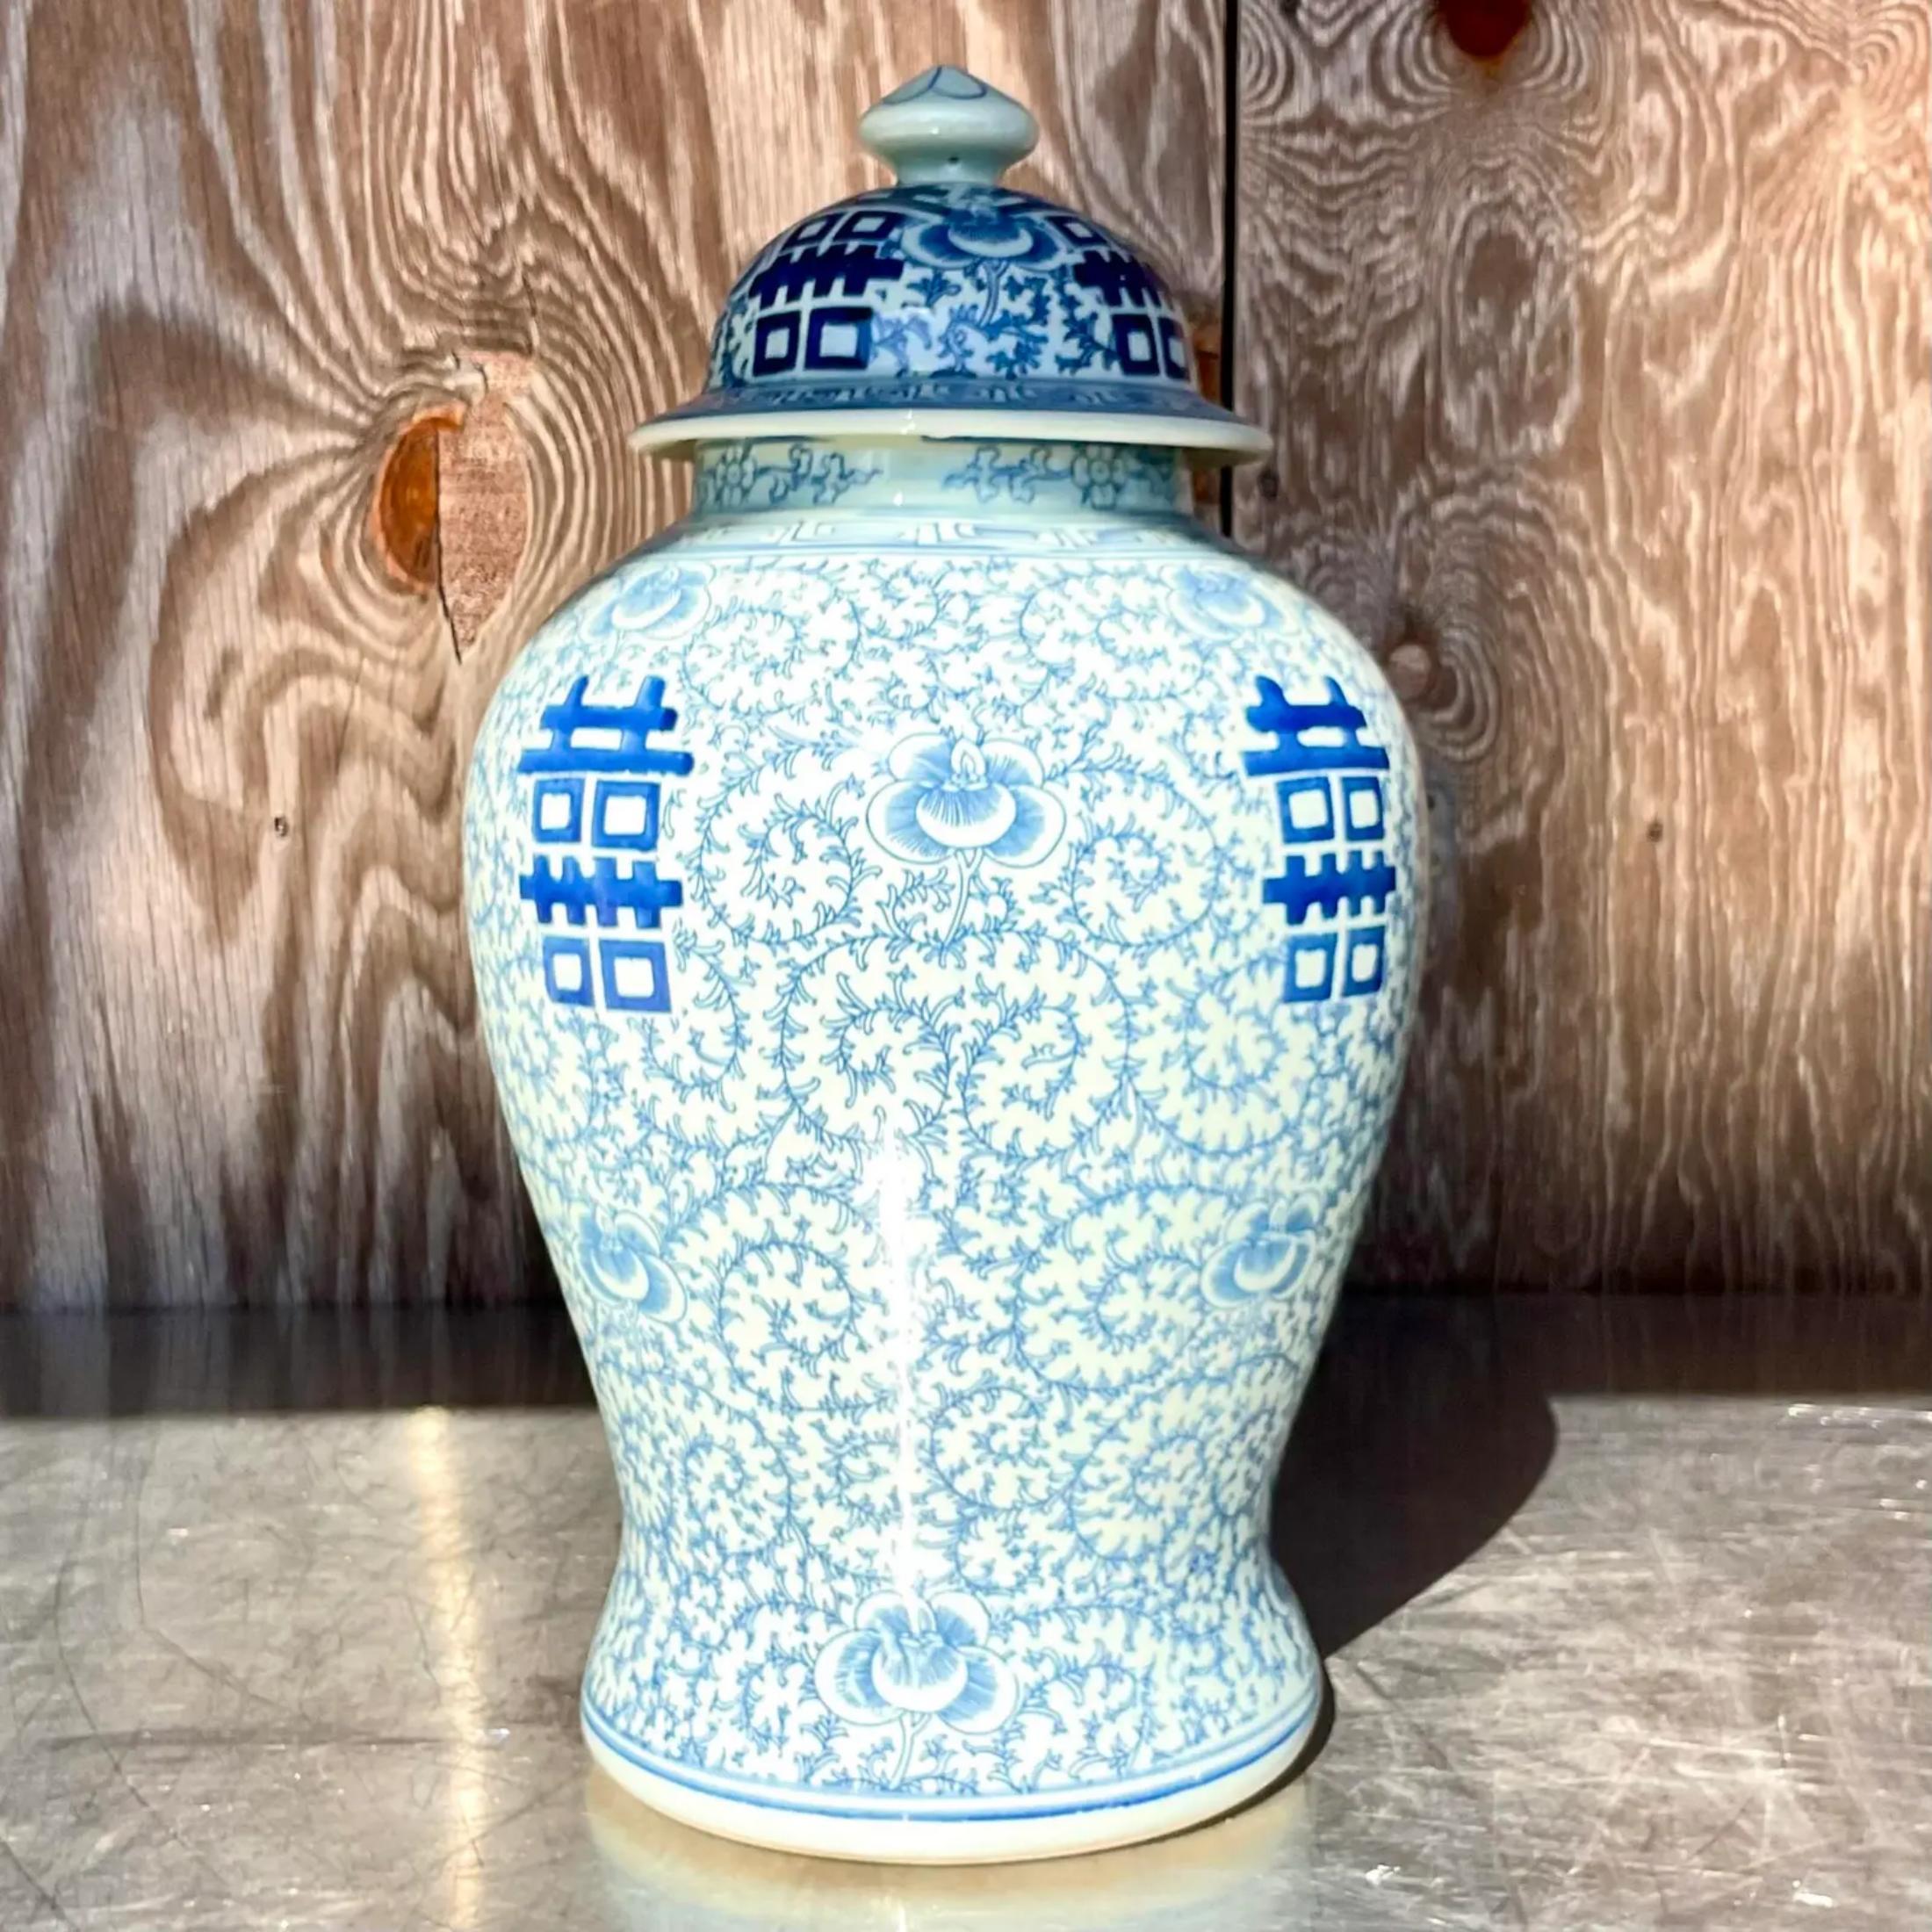 Une fabuleuse urne asiatique vintage à couvercle. Magnifique pot de gingembre de forme classique au design emblématique bleu et blanc. Acquis d'une propriété de Palm Beach.